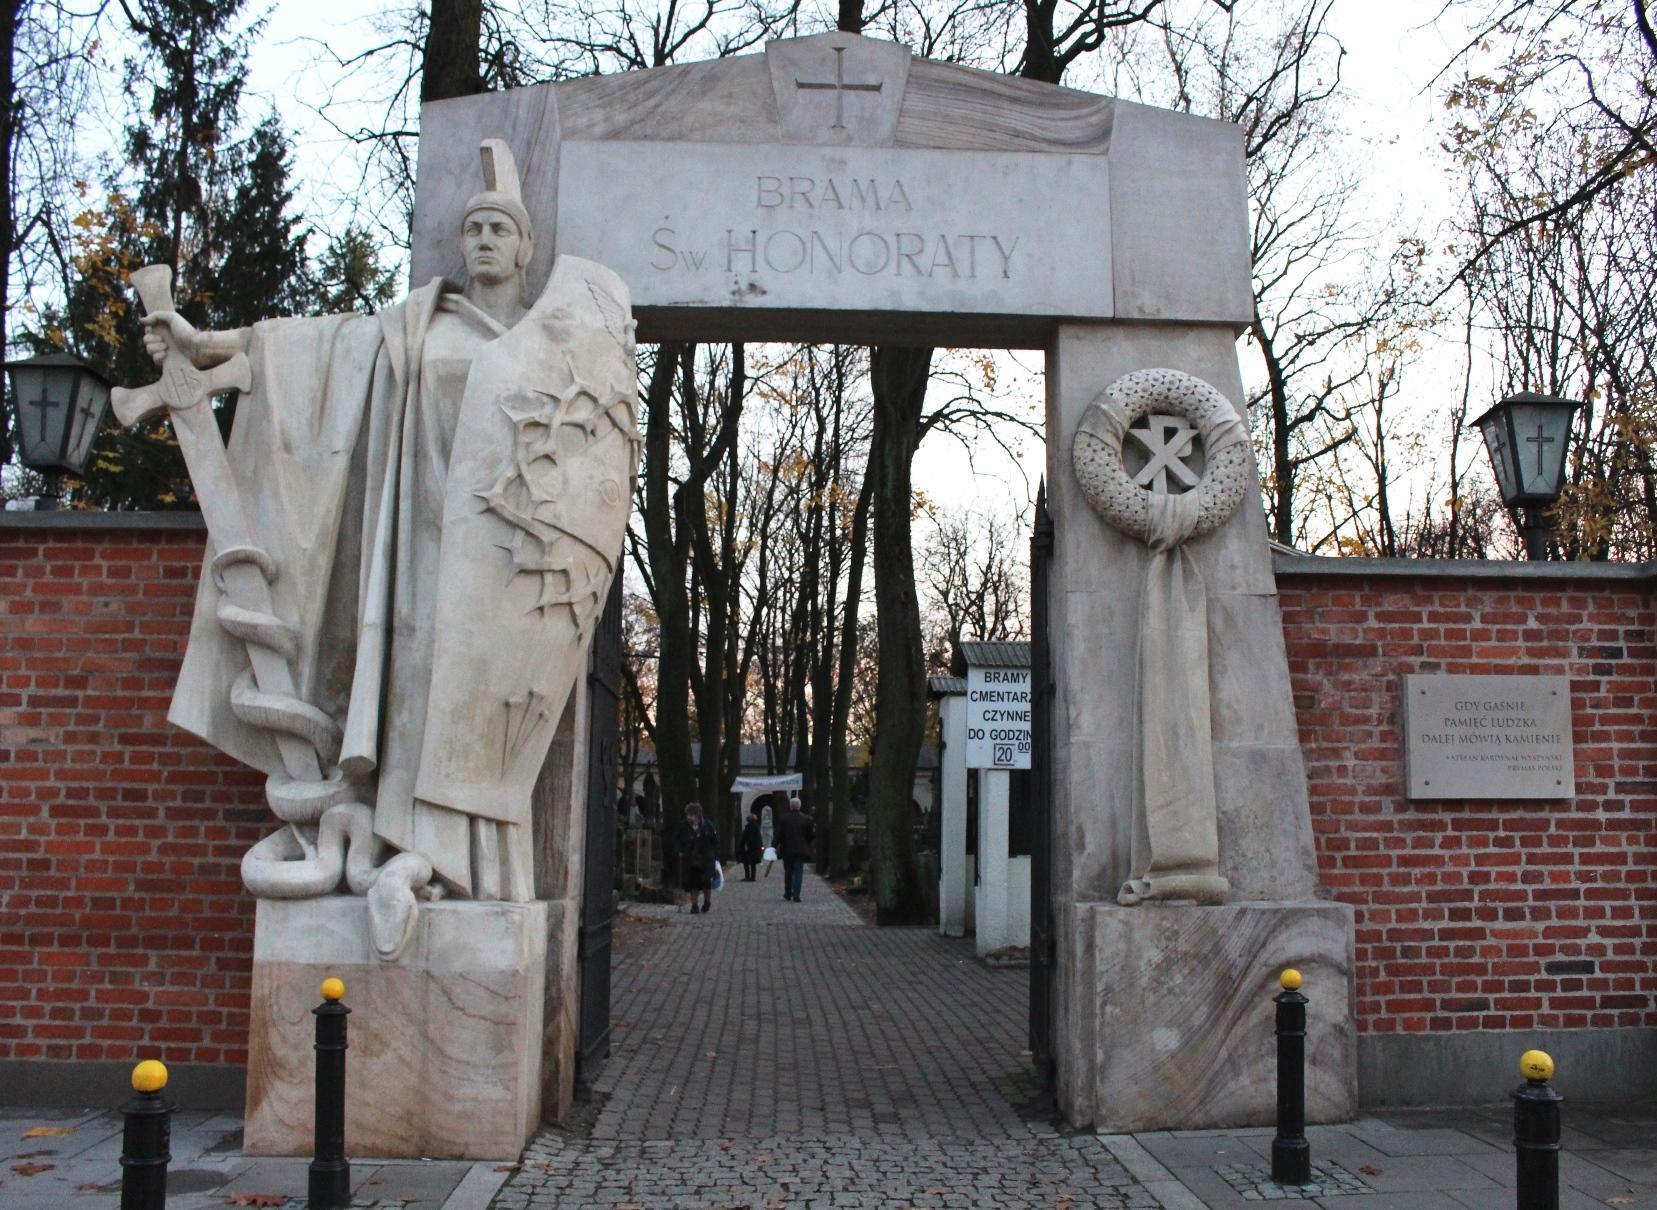 ingresso brama cimitero monumentale Powązki